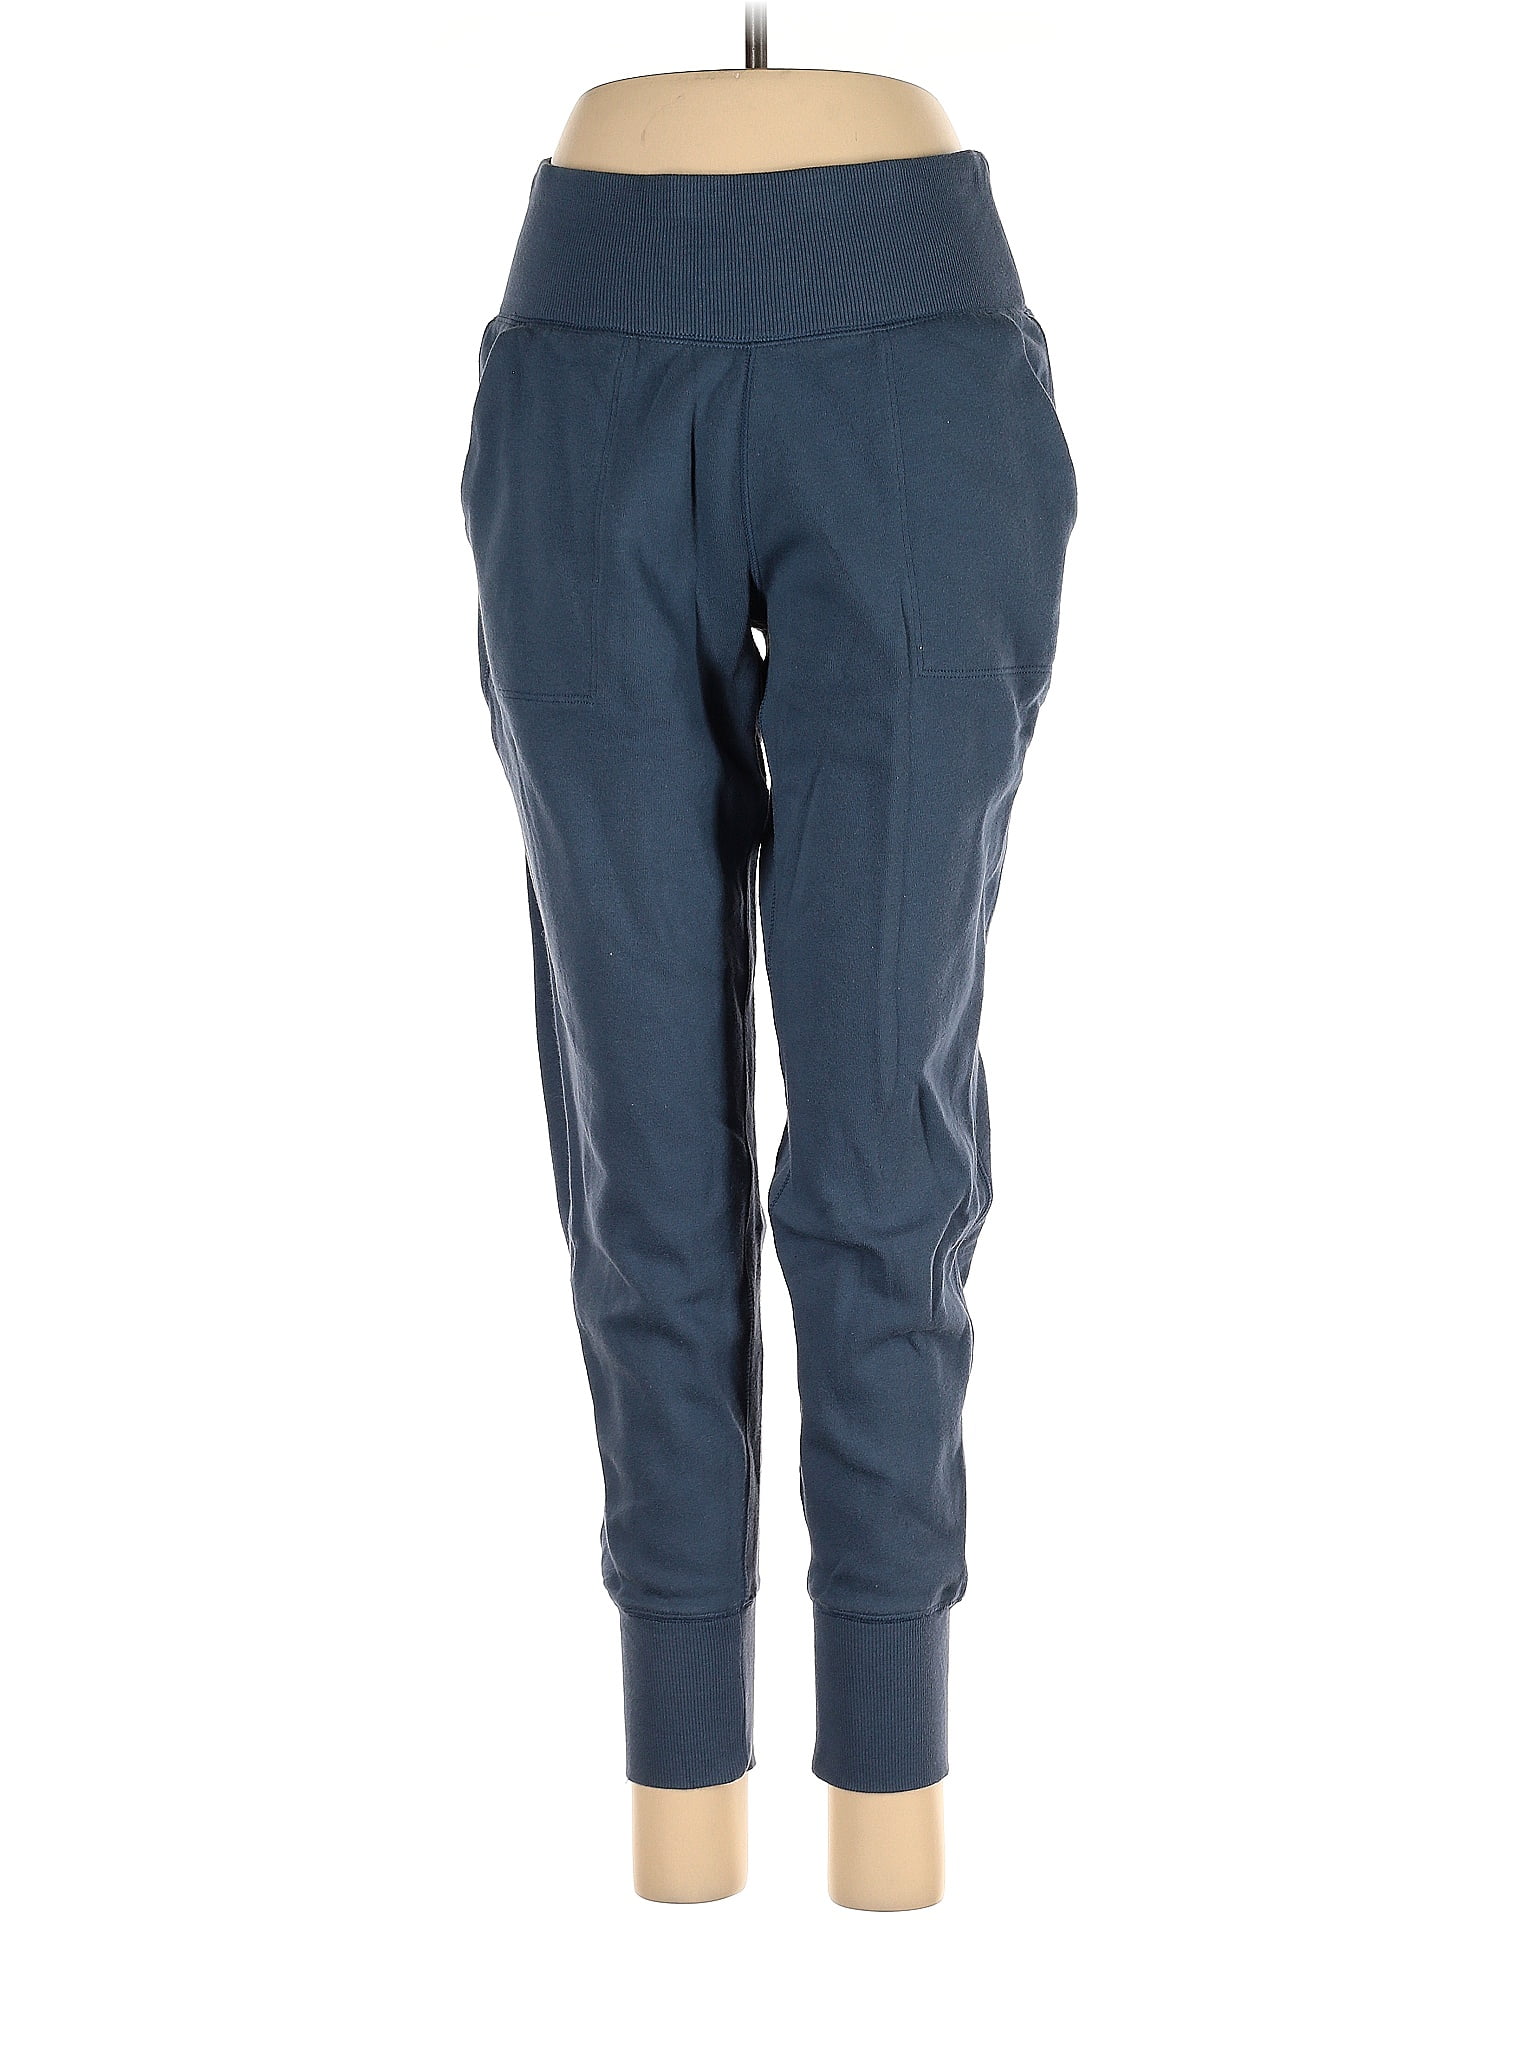 GAIAM Blue Active Pants Size XL - 47% off